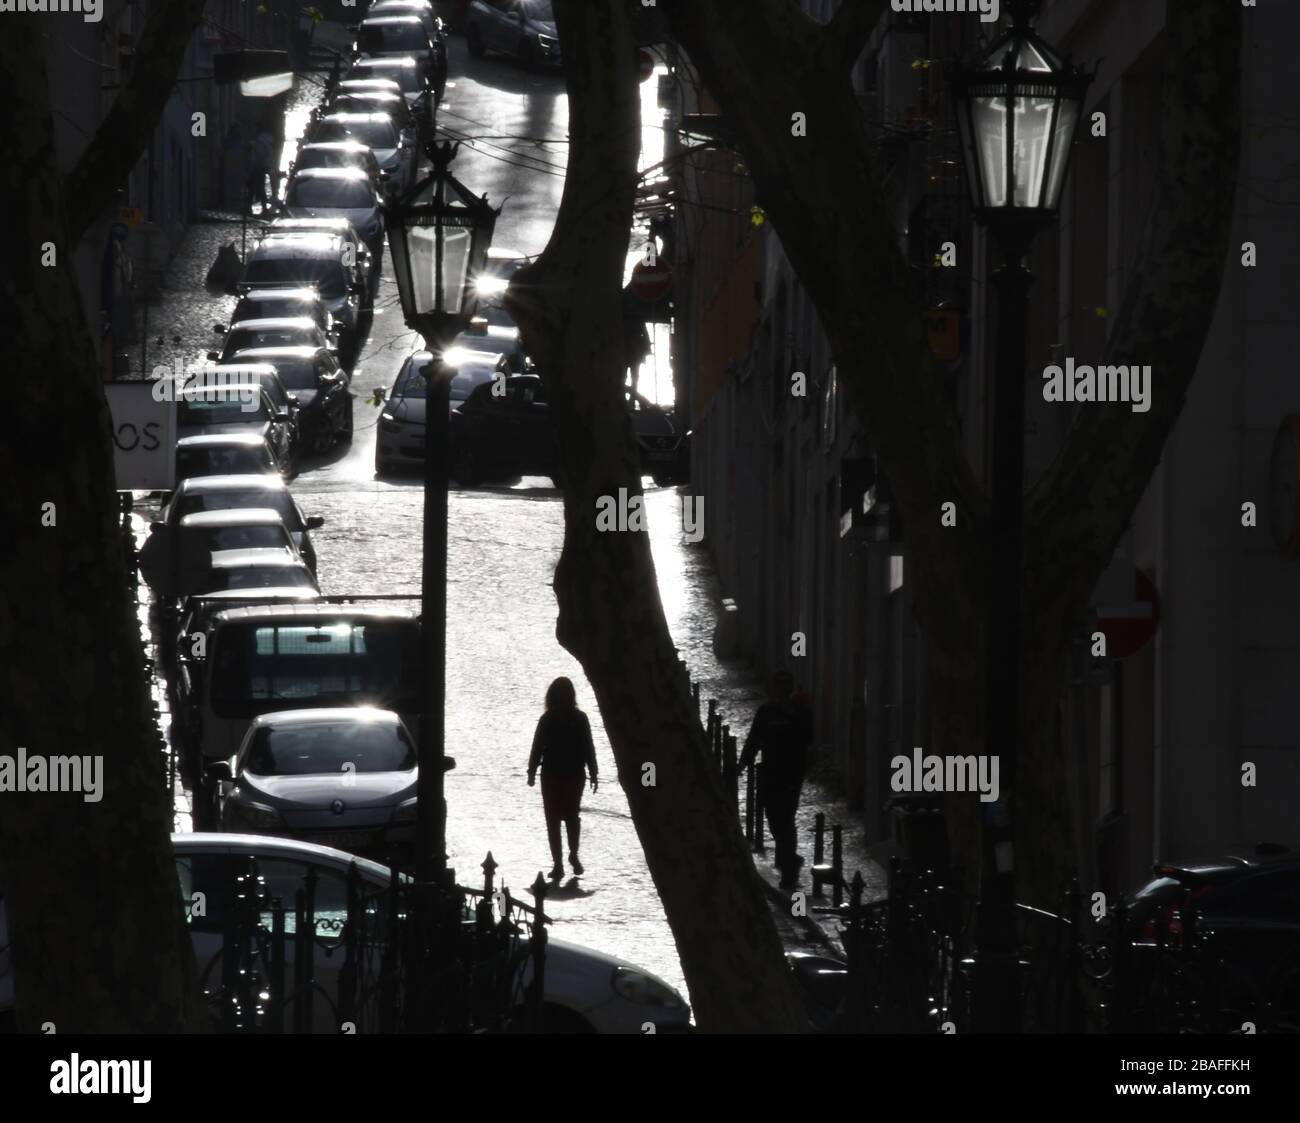 10 marzo 2020, Lisbona, Portogallo: Scene di strada a Lisbona, Portogallo, marzo 2020. La città è costruita su sette colline. (Credit Image: © Mark Hertzberg/ZUMA Wire) Foto Stock